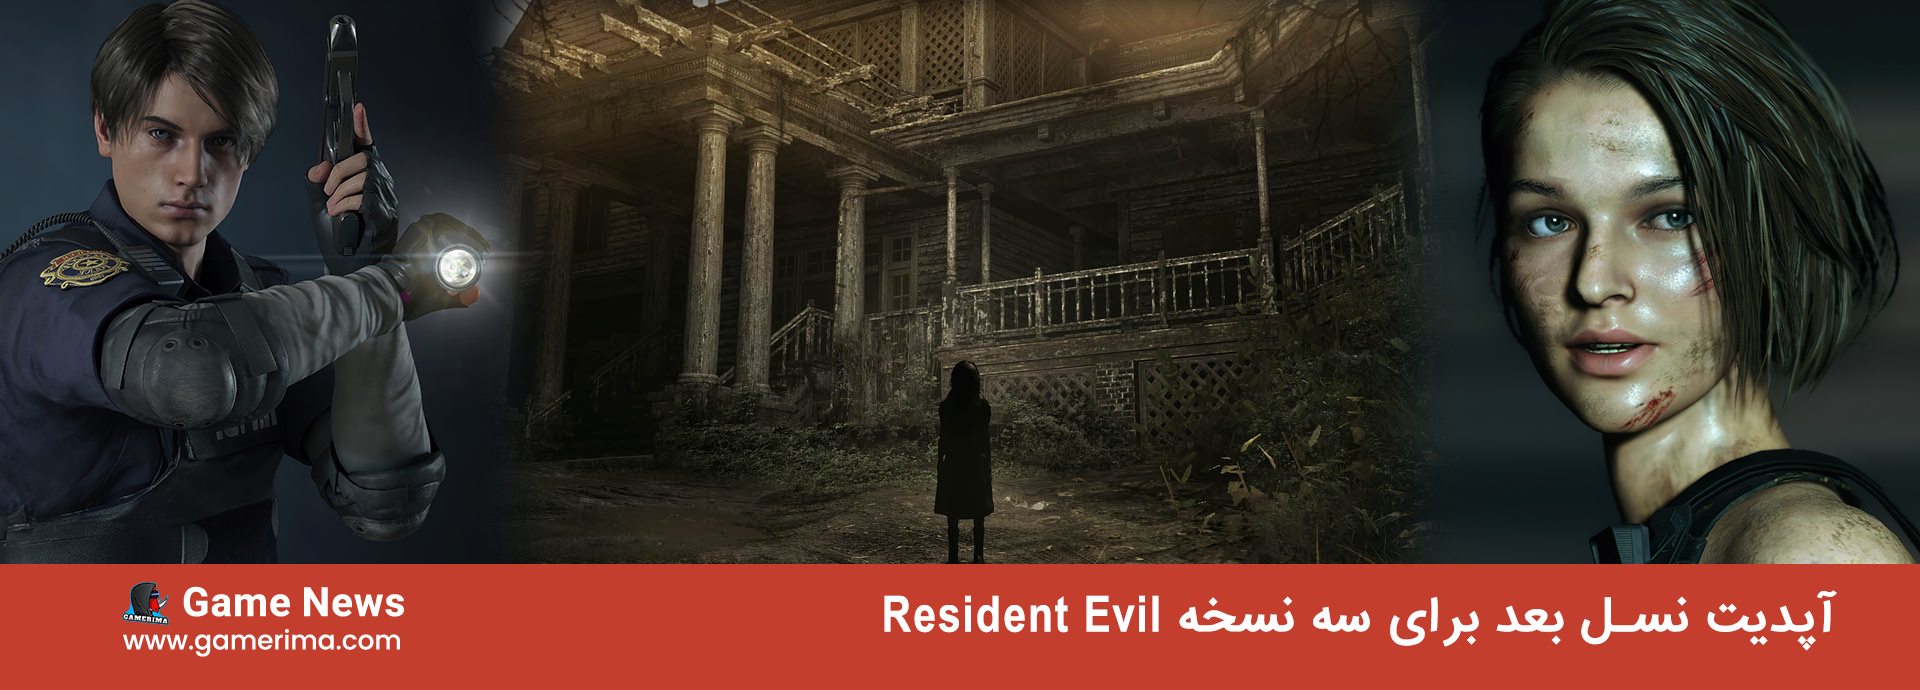 چند تا از بازی های Resident evil آپدیت نسل بعد دریافت می کنند